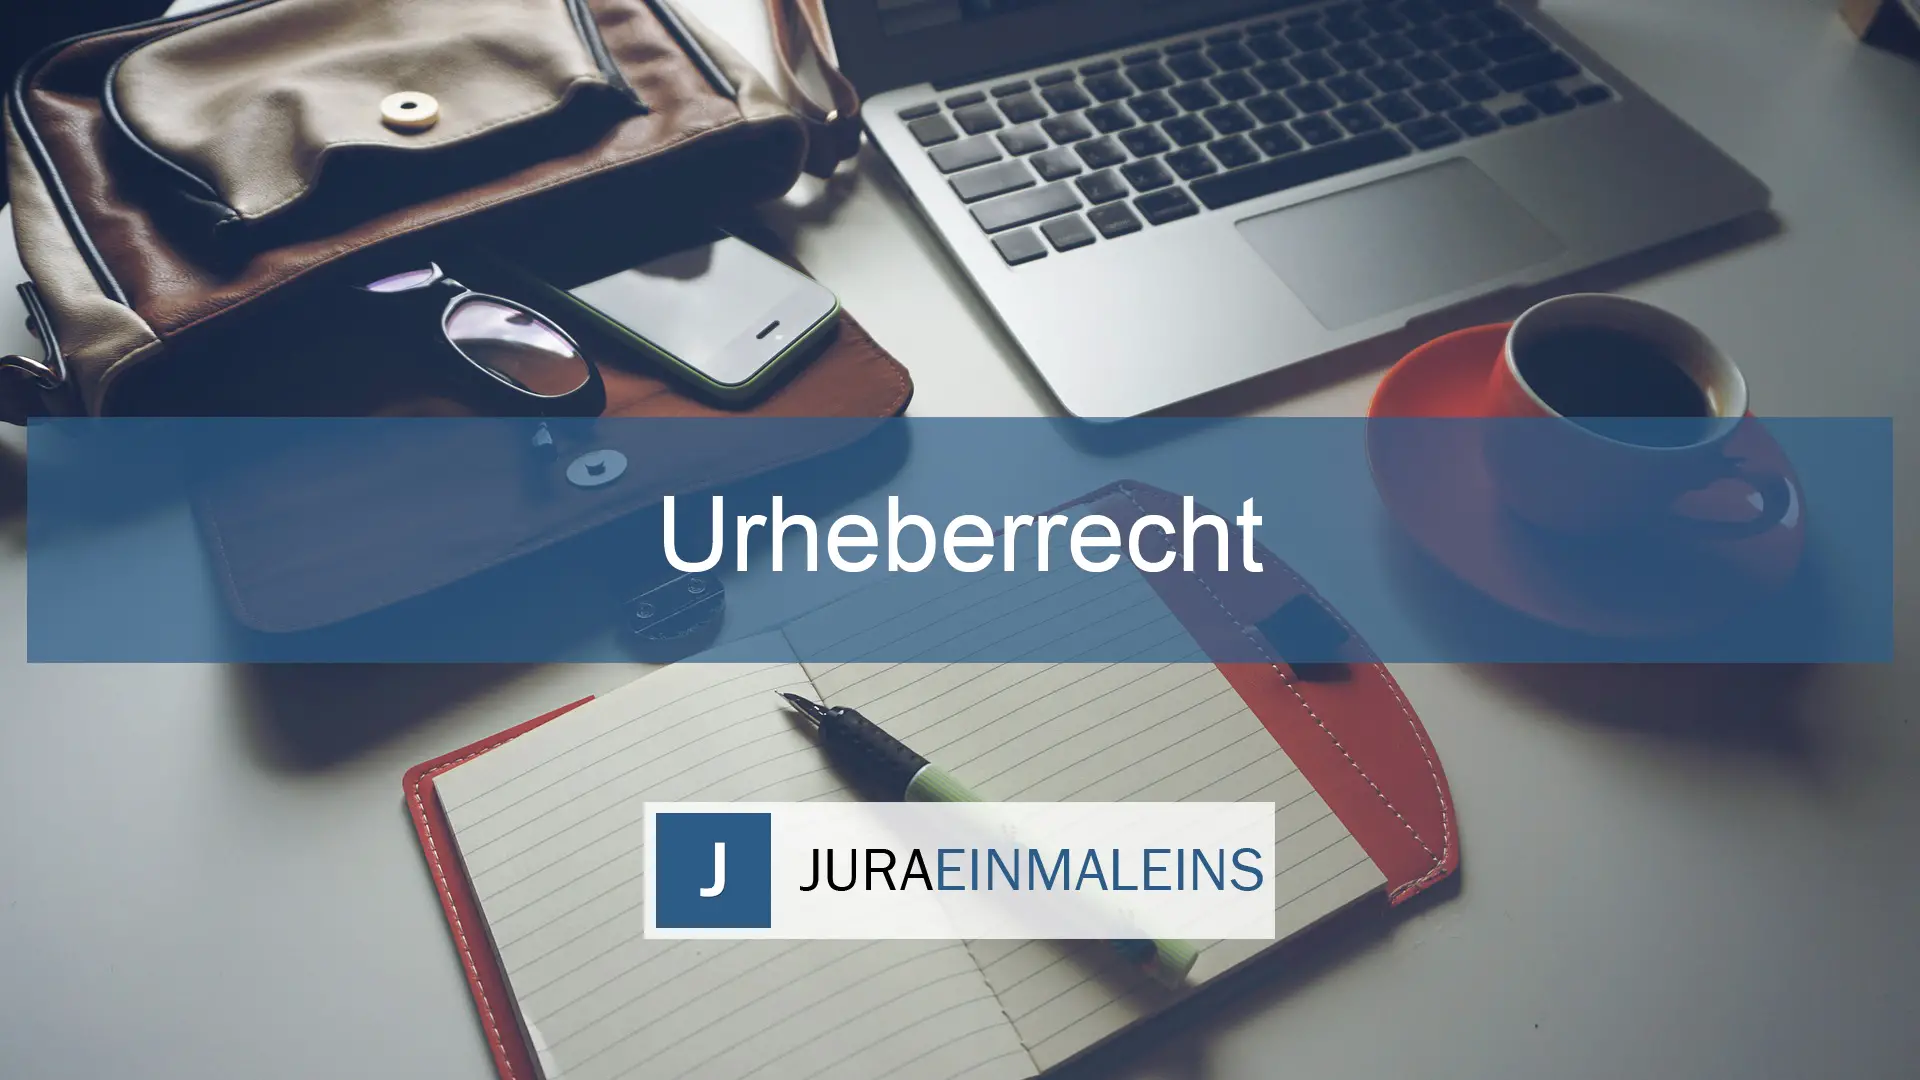 Urheberrecht - Juraeinmaleins - Schwerpunktbereich - Studium - Jurastudium